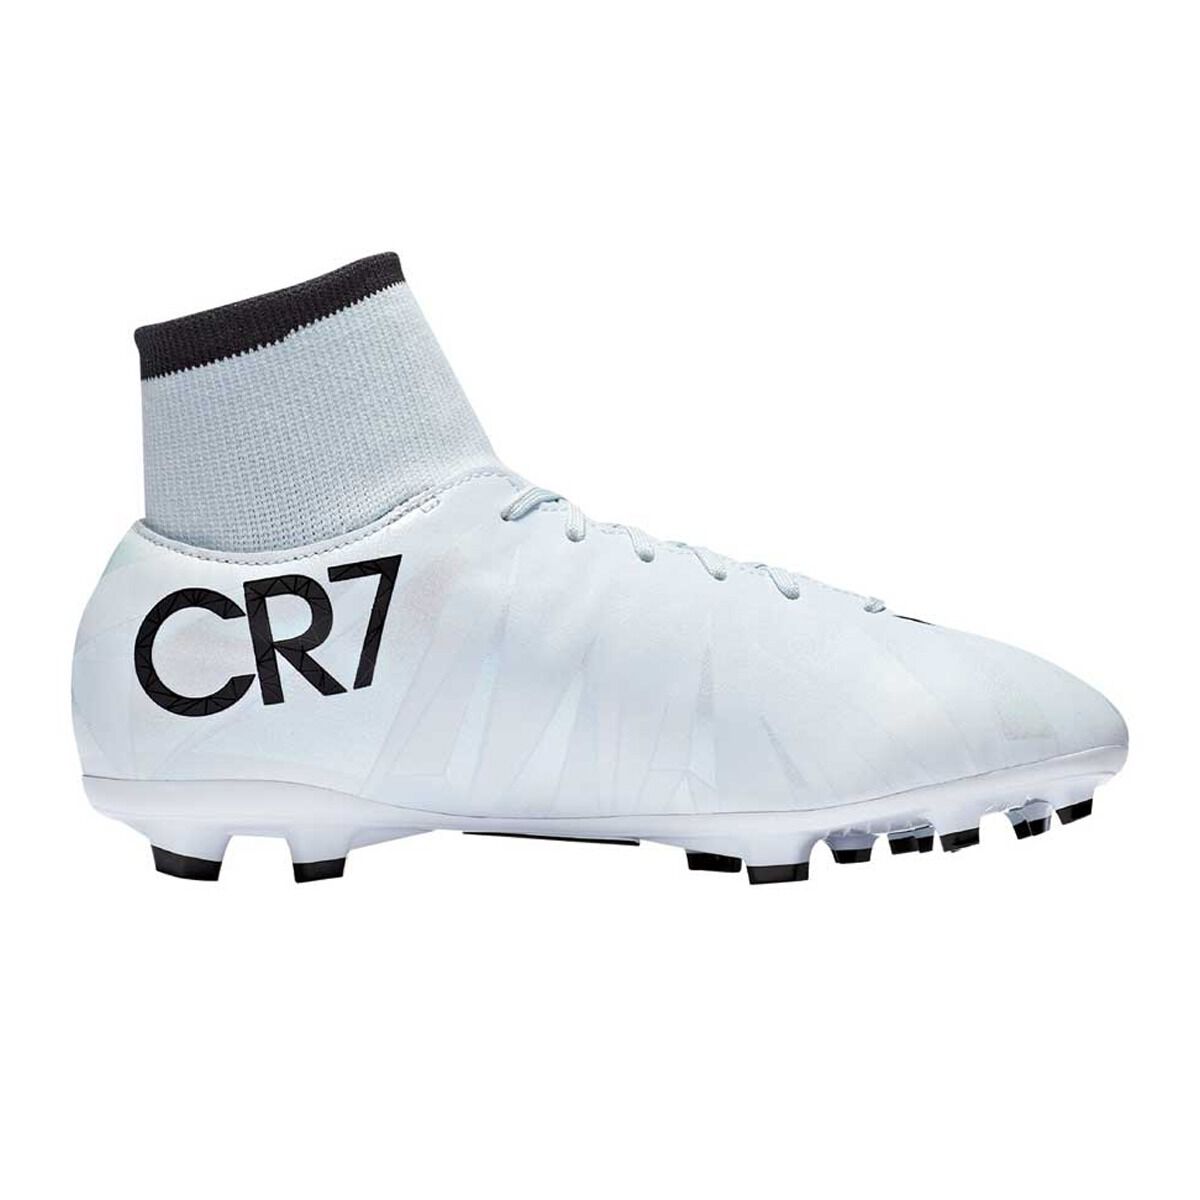 Nike CR7 Strike Soccer Ball